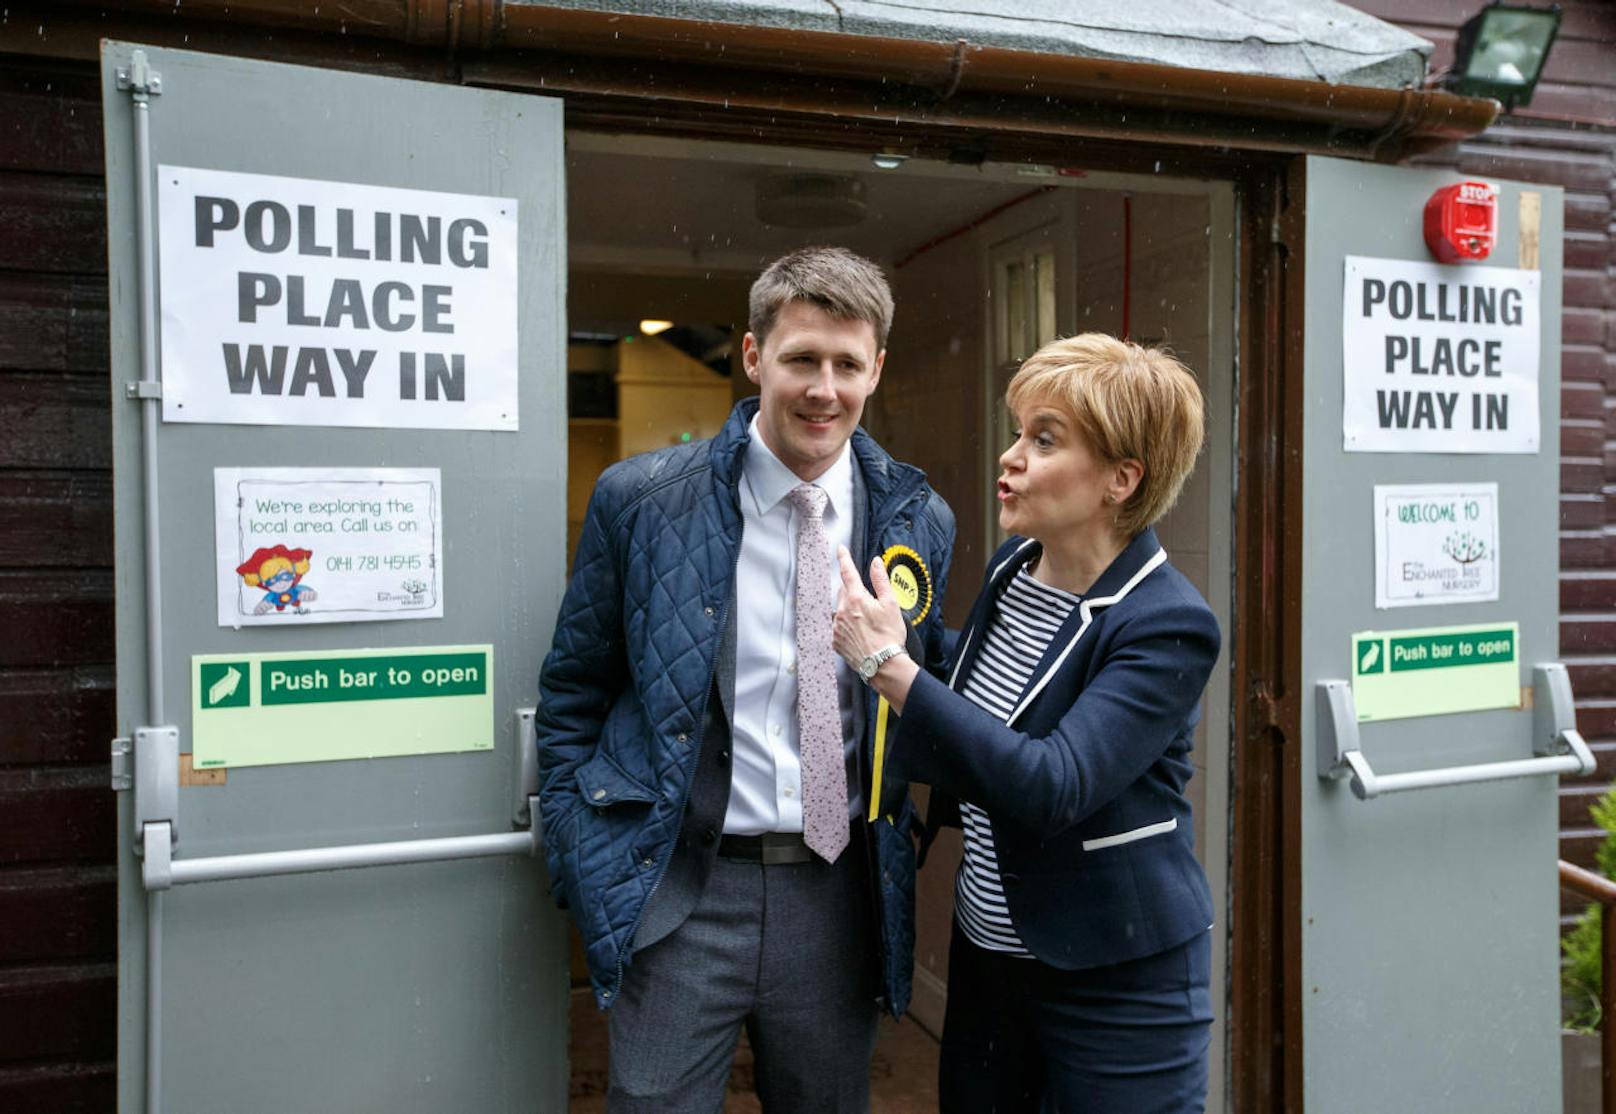 Nicola Sturgeon, die Chefin der Scottish National Party (SNP) wählte medienwirksam in der Broomhouse Community Hall in Glasgow. Die SNP war bislang drittstärkste Kraft im Parlament, obwohl sie 2015 nur rund fünf Prozent der Stimmen erhalten hatte. <a href="https://www.heute.at/welt/news/story/Das-muessen-Sie-zu-den-britischen-Wahlen-wissen-58756395" target="_blank">Lesen Sie hier, wie das britische Wahlsystem funktioniert.</a>